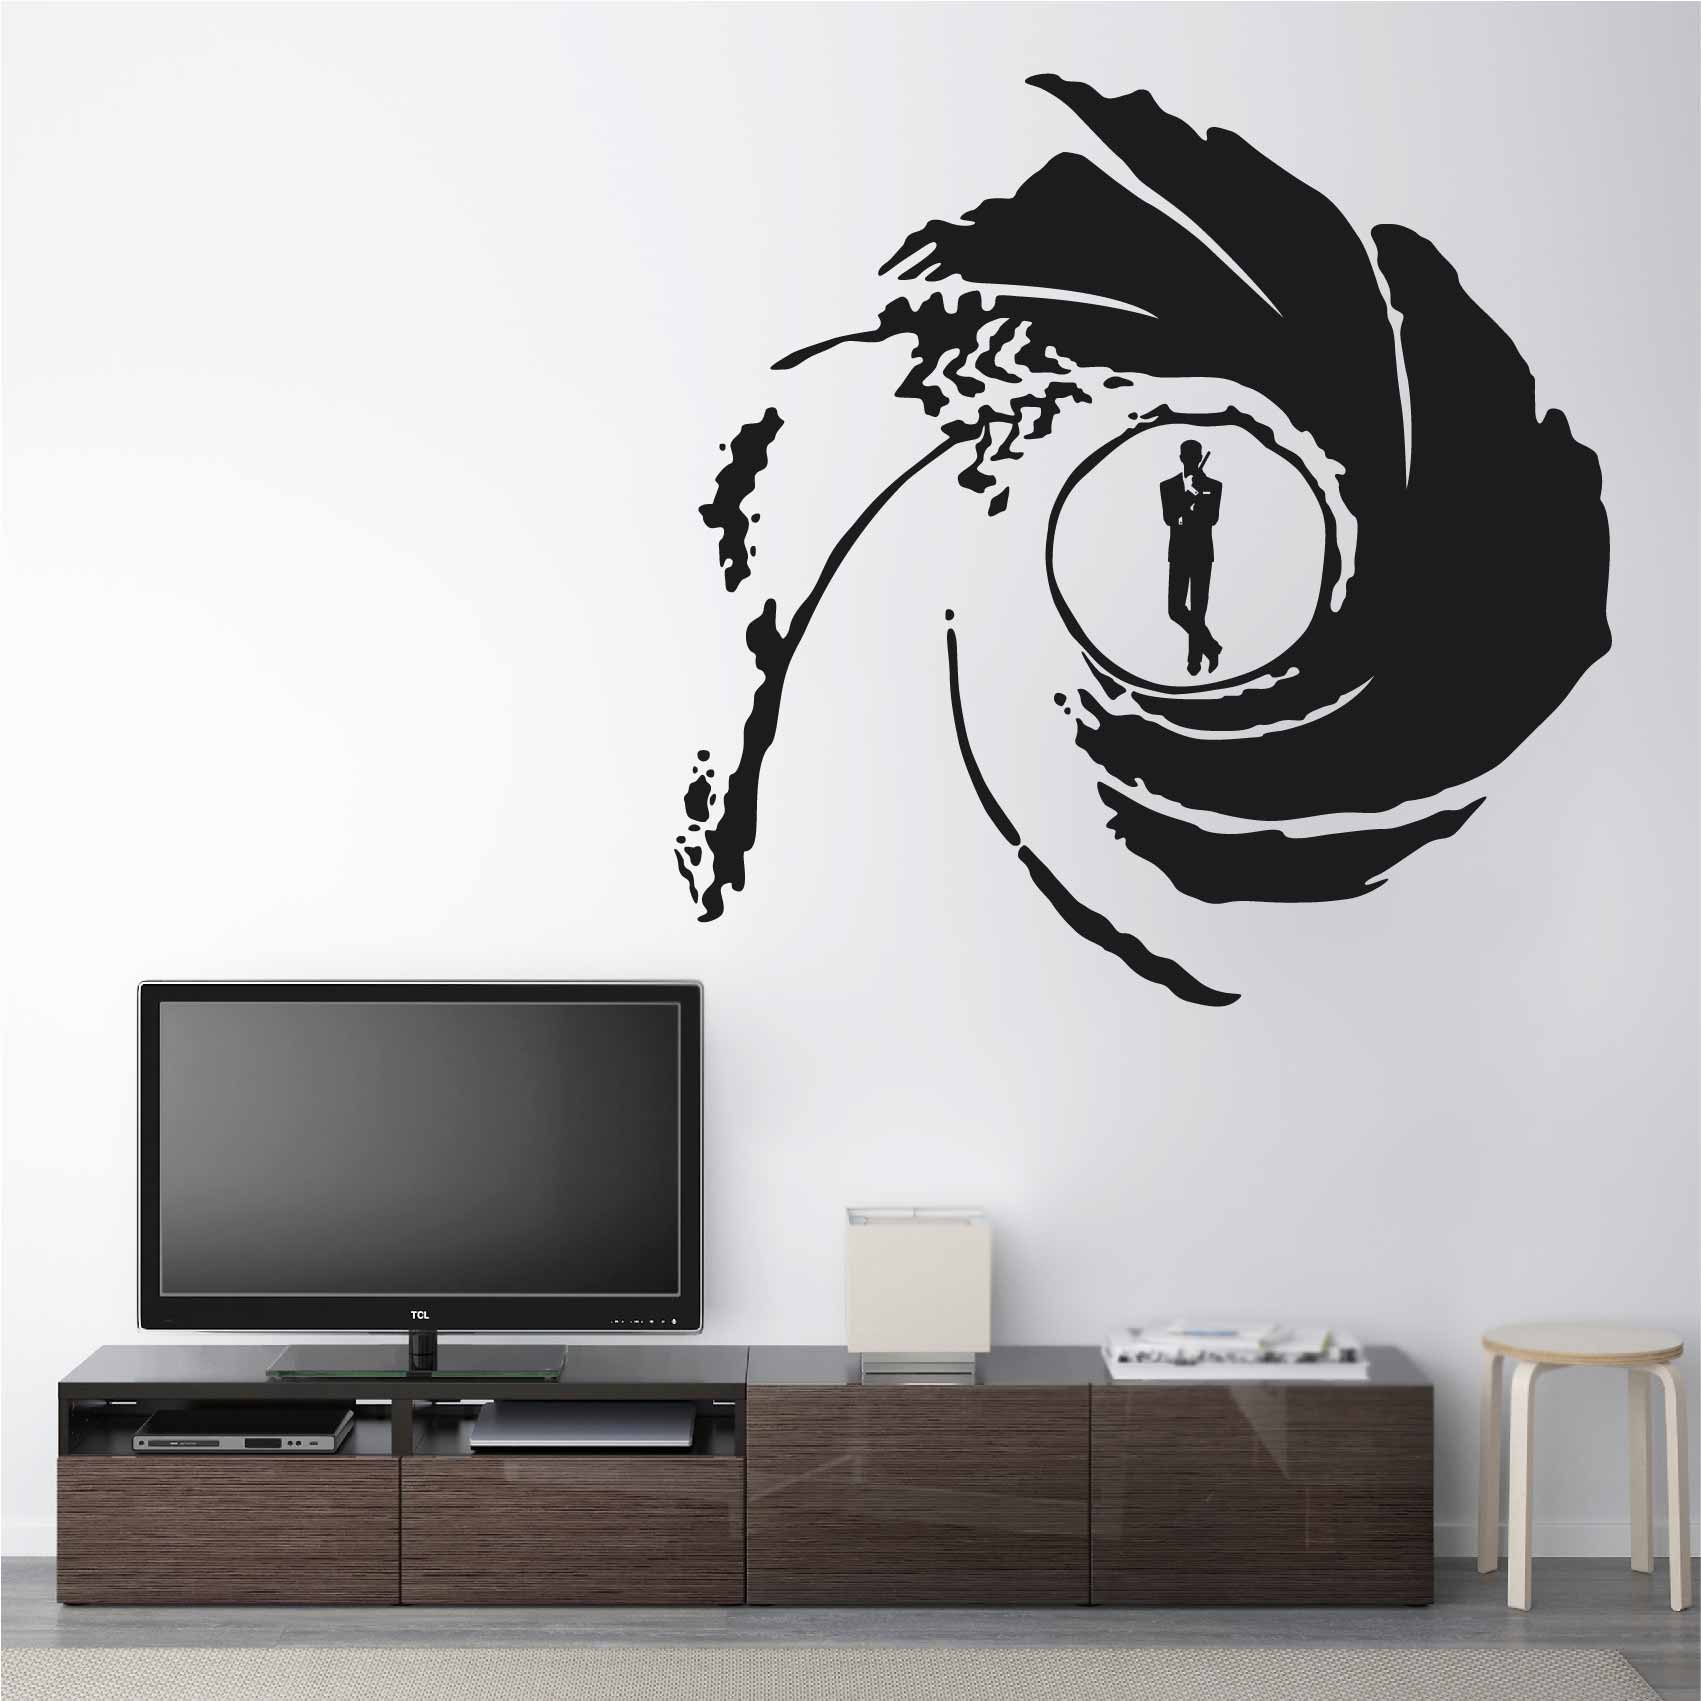 stickers-007-pop-art-ref1silhouette-stickers-muraux-silhouette-autocollant-silhouettes-chambre-salon-sticker-mural-ombre